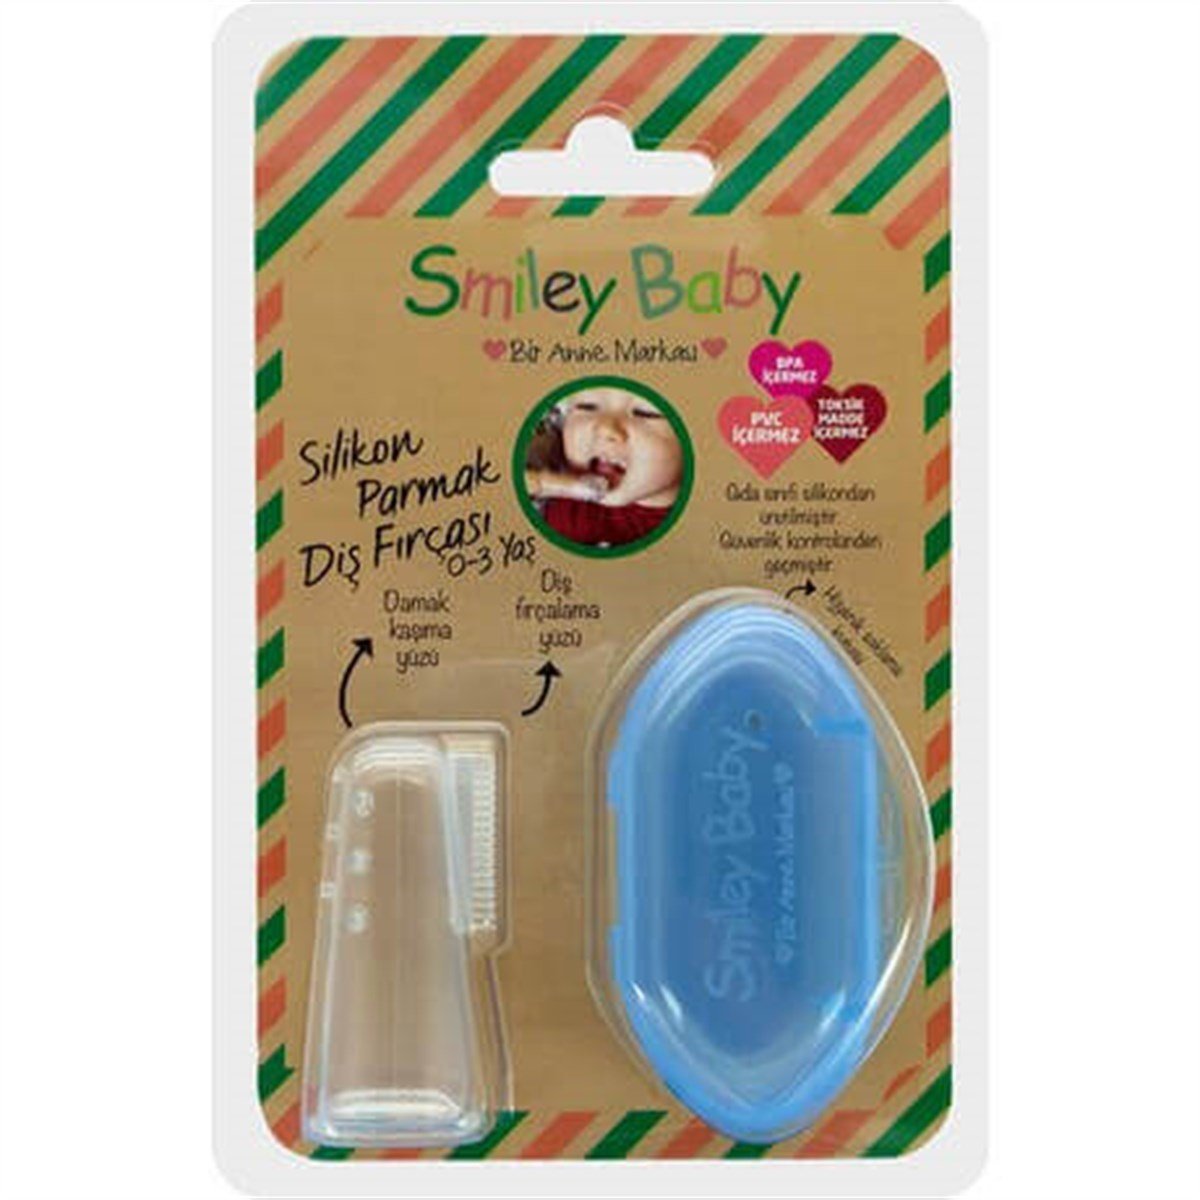 Smiley Baby Silikon Parmak 0-3 Ay Diş Fırçası Mavi Fiyatları |  Dermosiparis.com